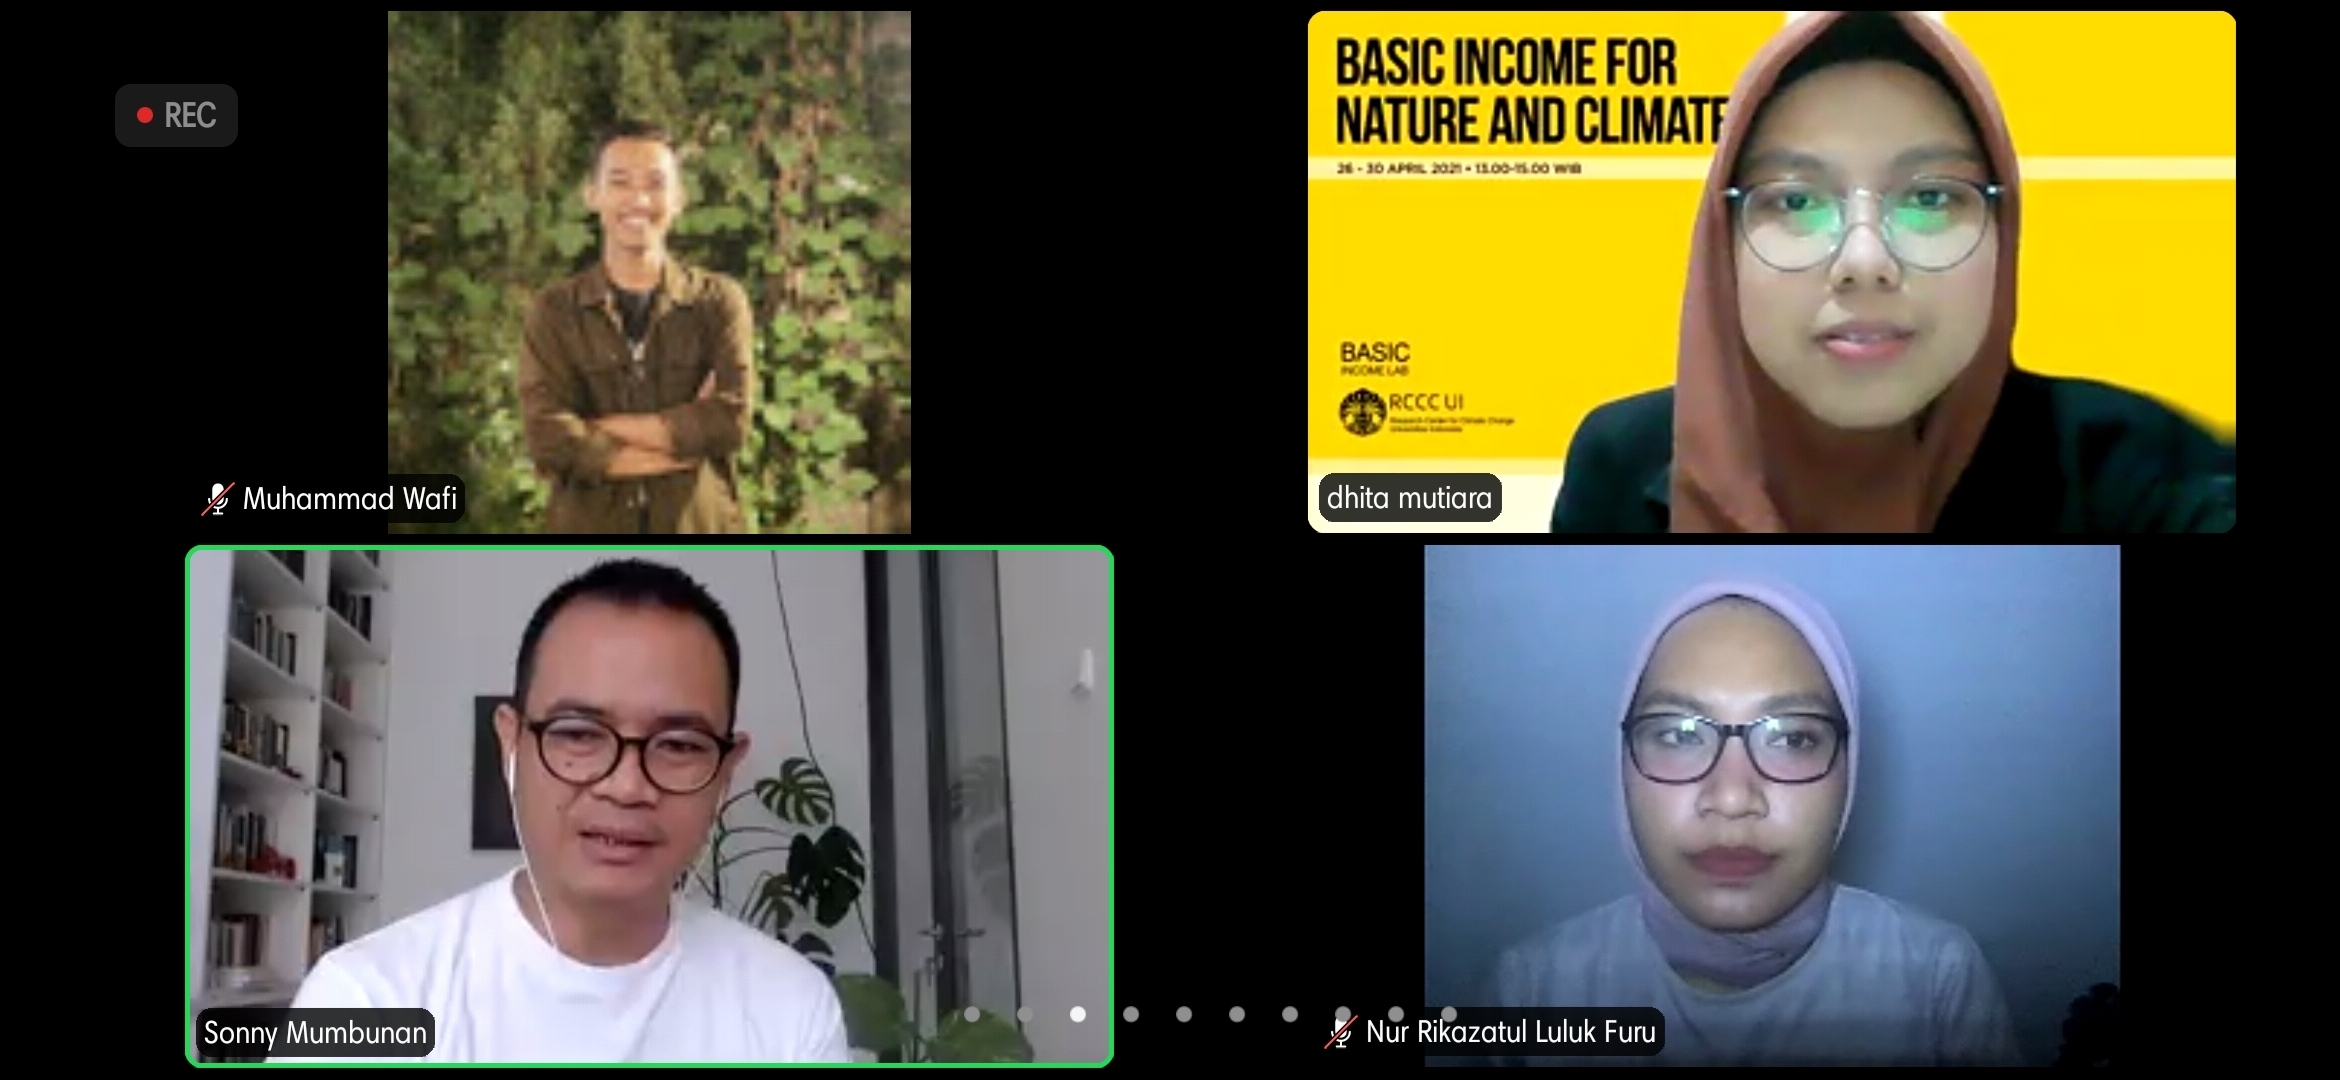 RCCC UI Gelar Diskusi Bertema "Basic Income Untuk Alam dan Iklim"